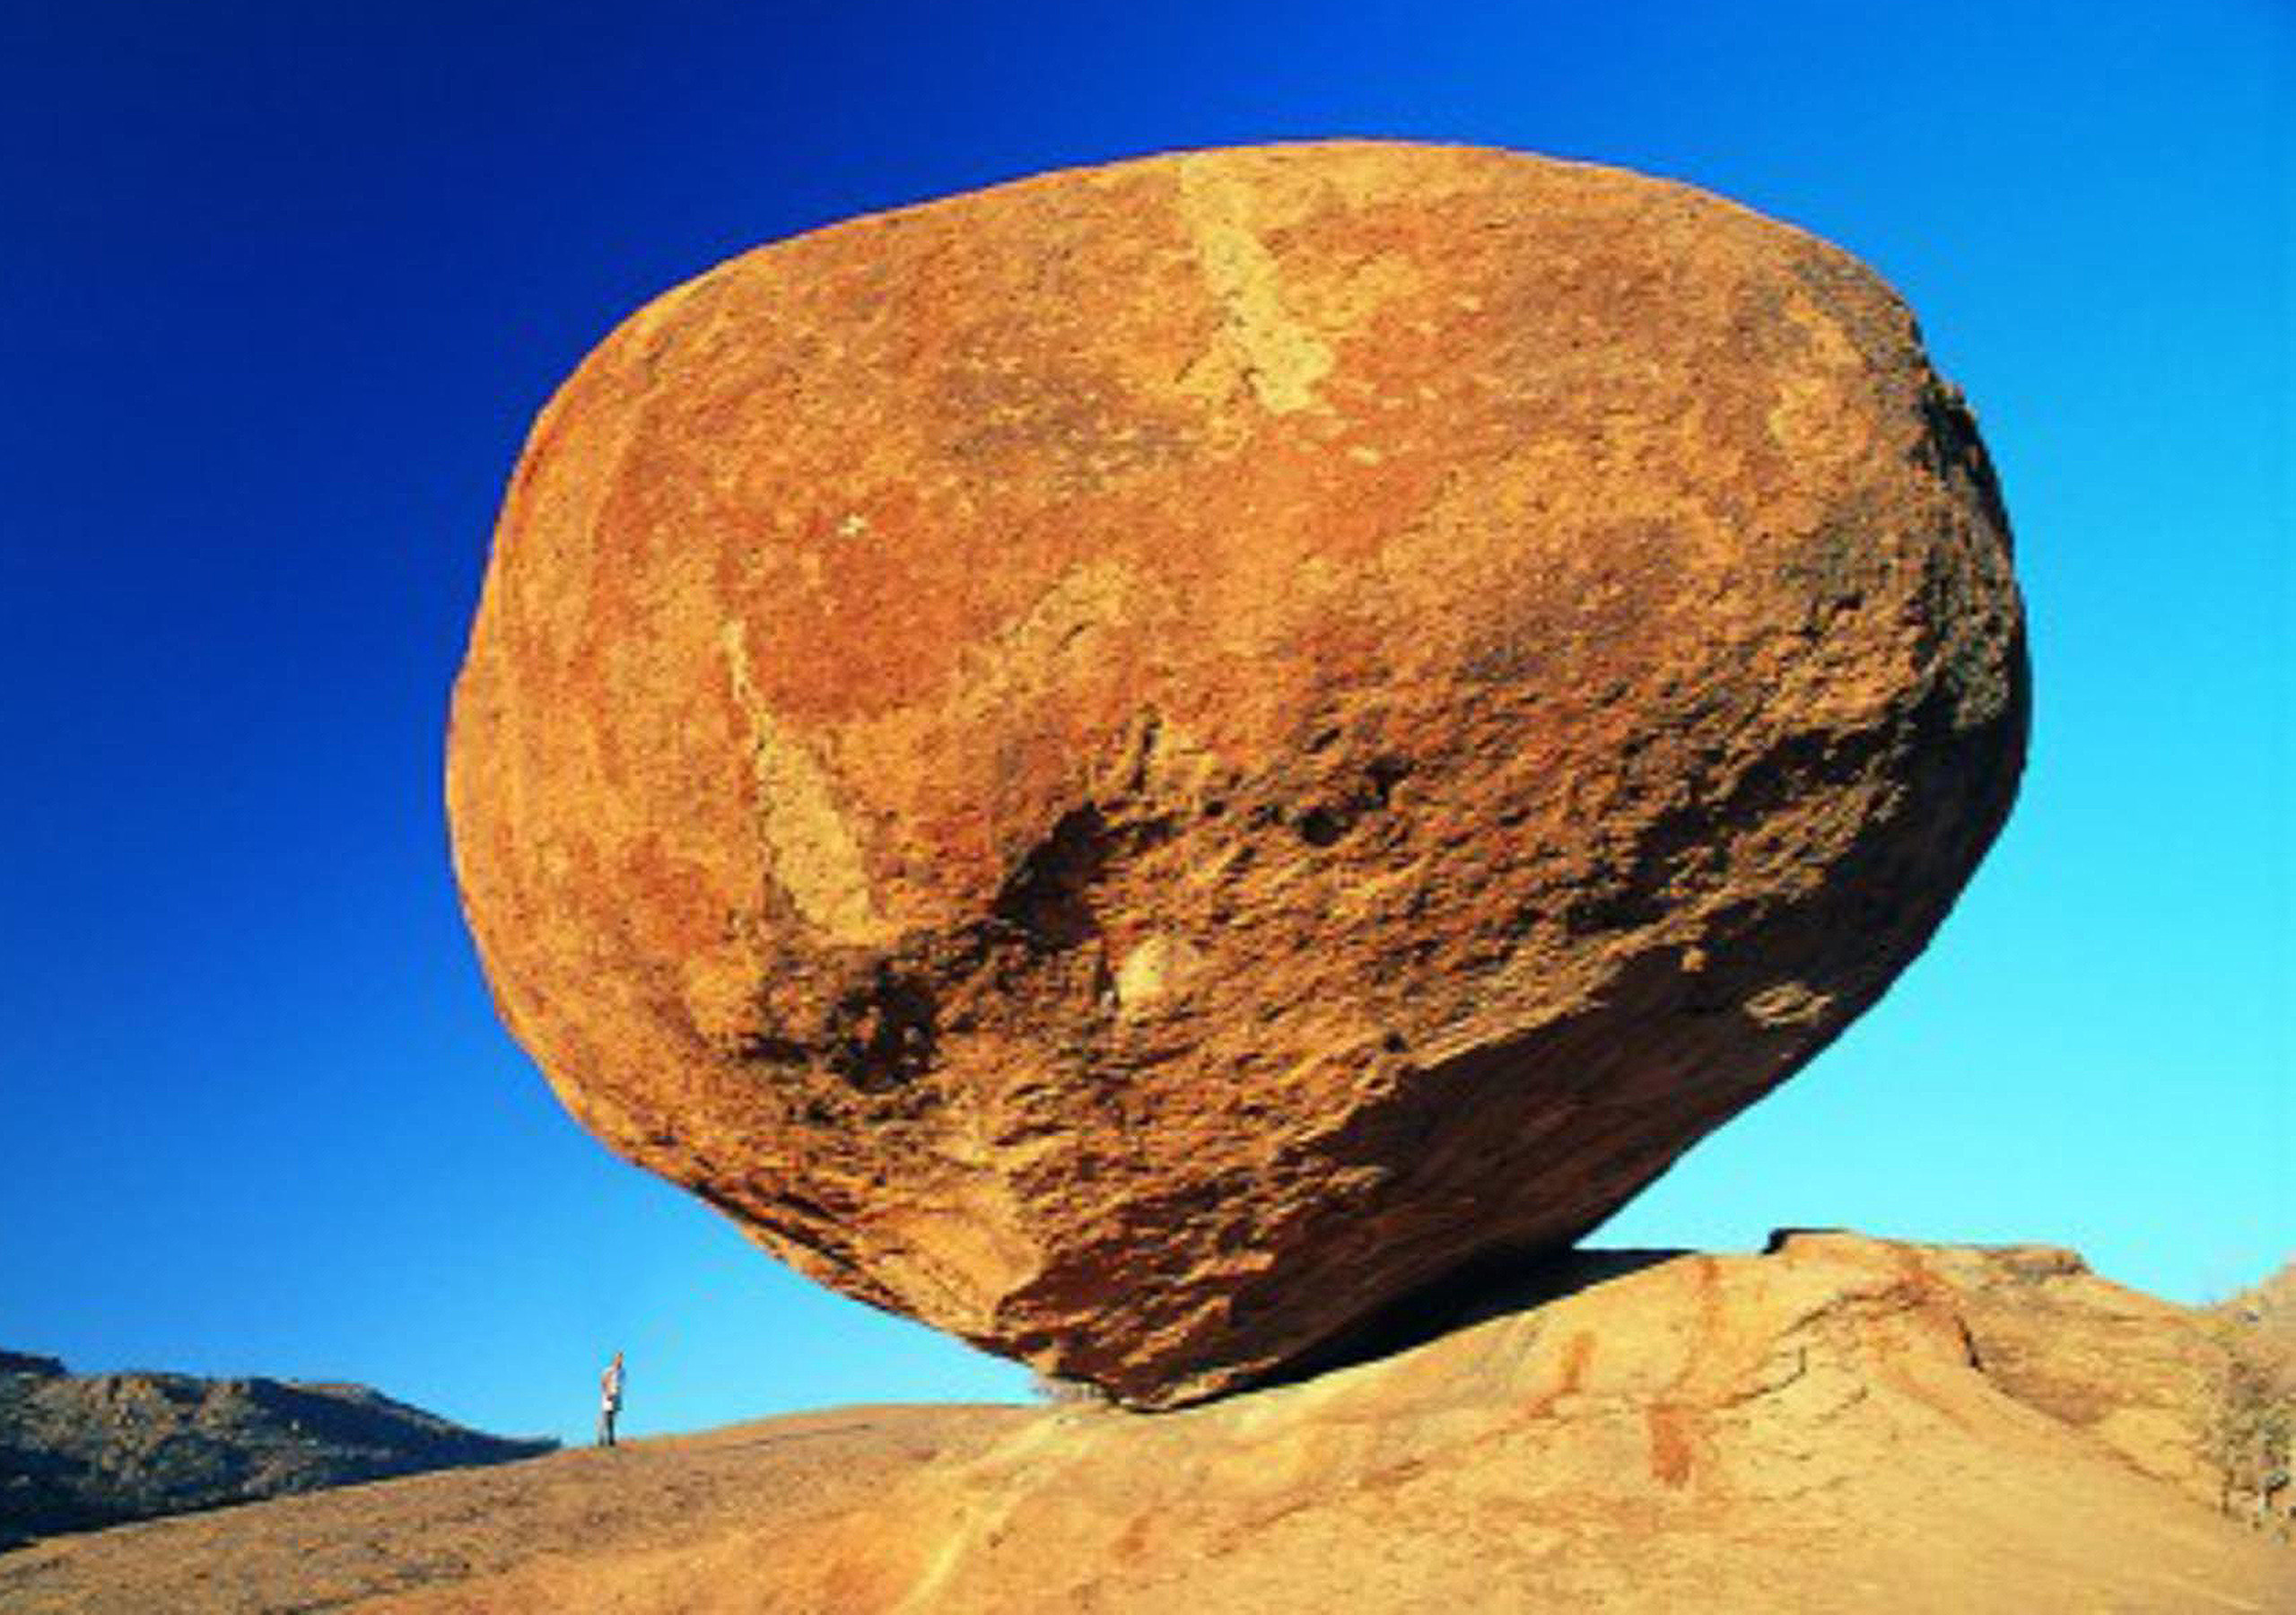 big rock in desert.623a6a21eb3b4fdb9220fd2b6a1c18ef